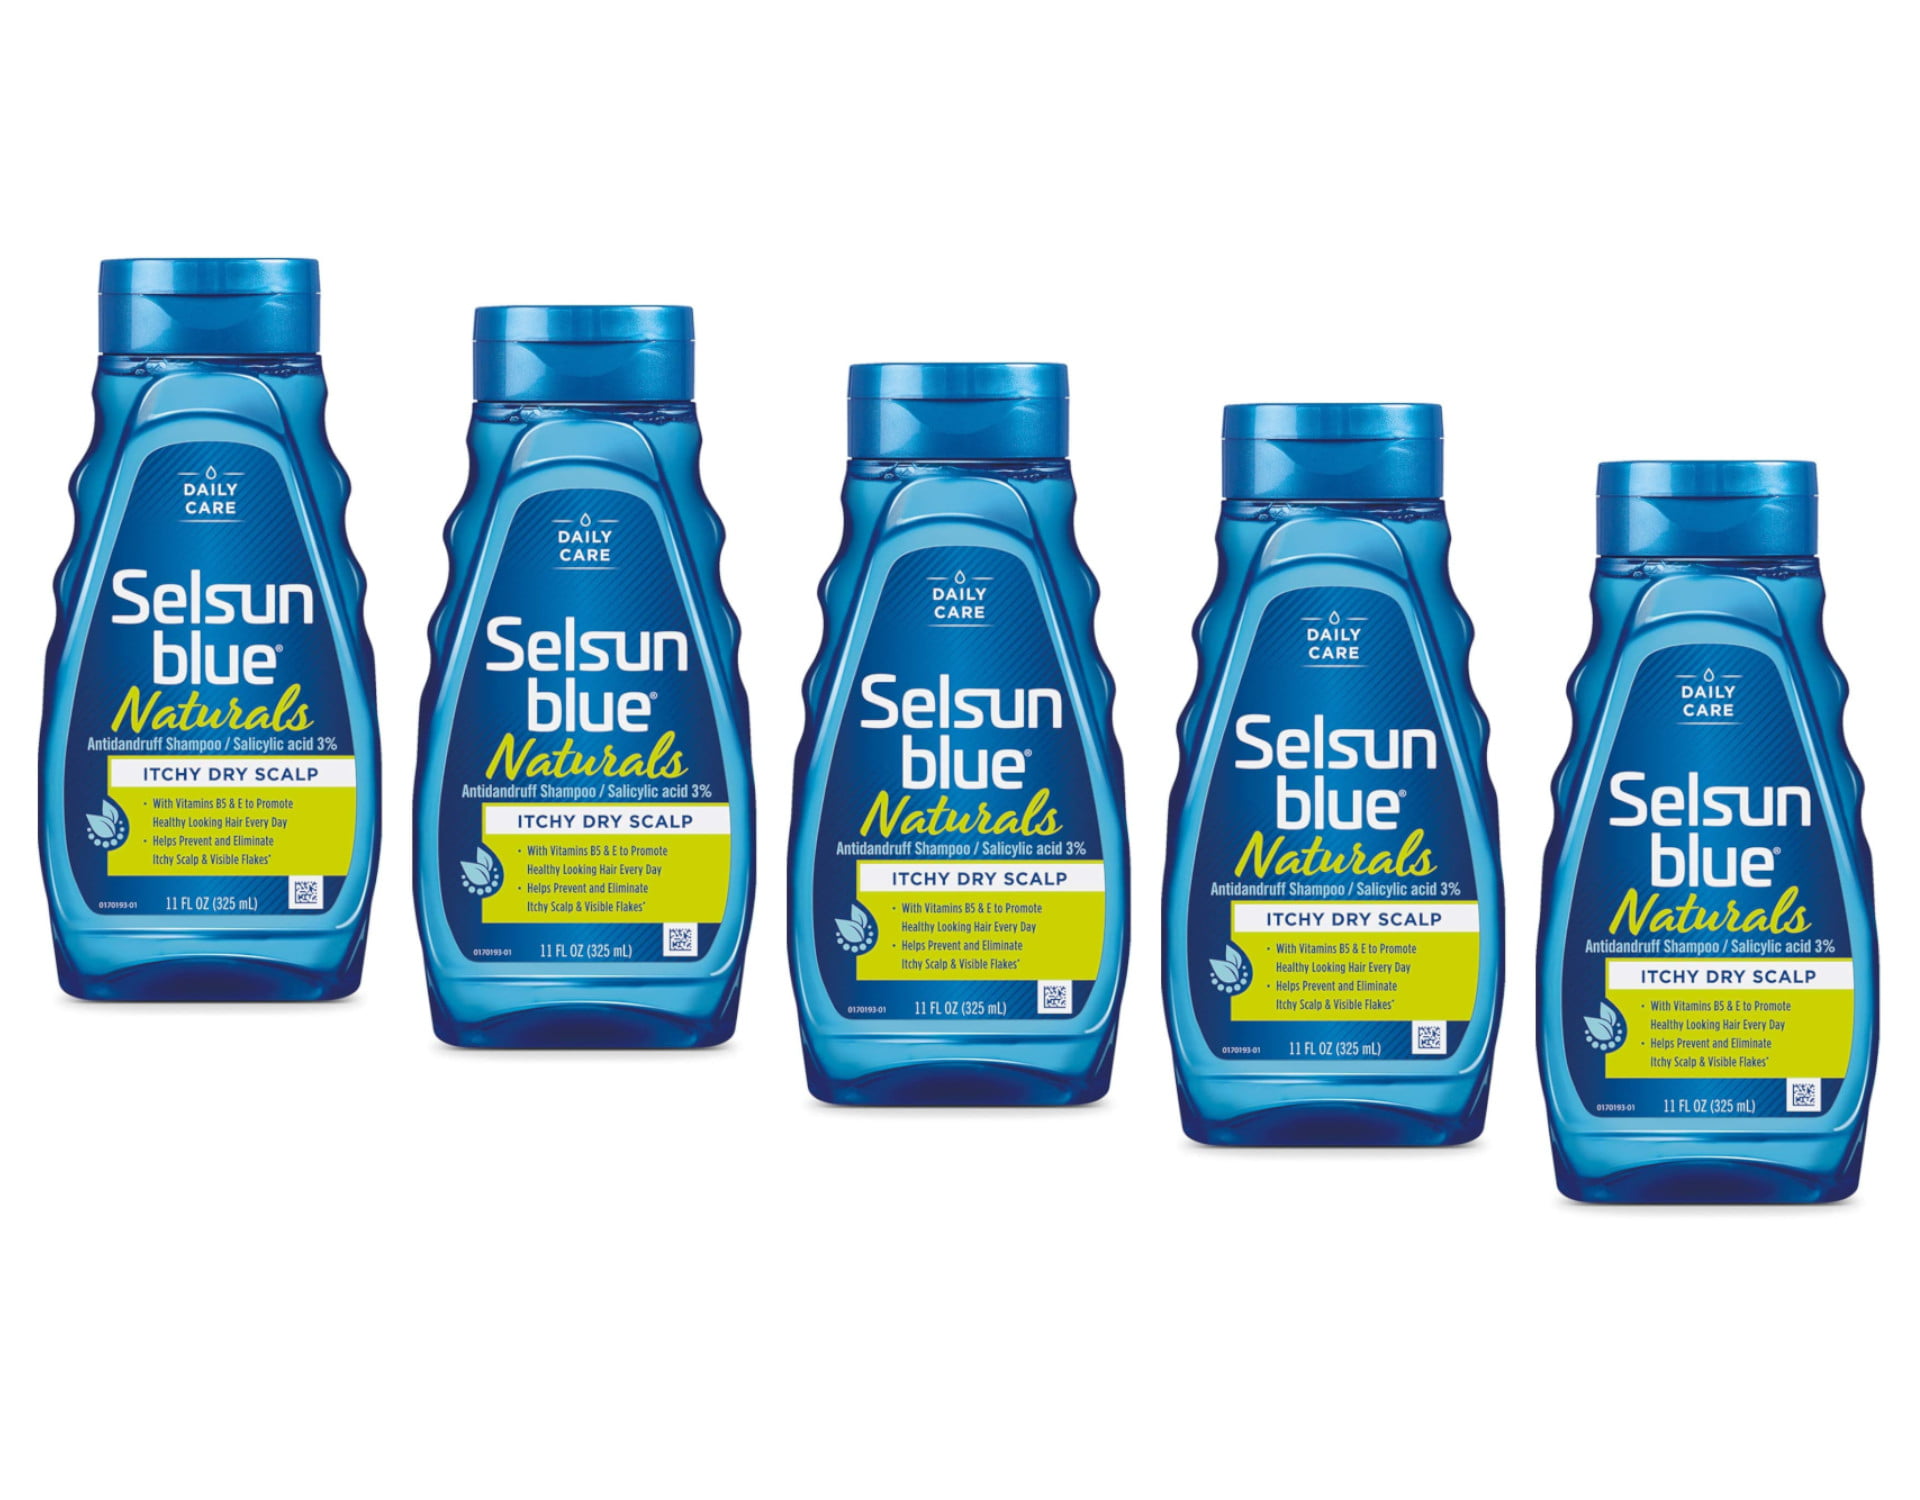 5 Selsun Blue Naturals Shampoo Oz - Walmart.com